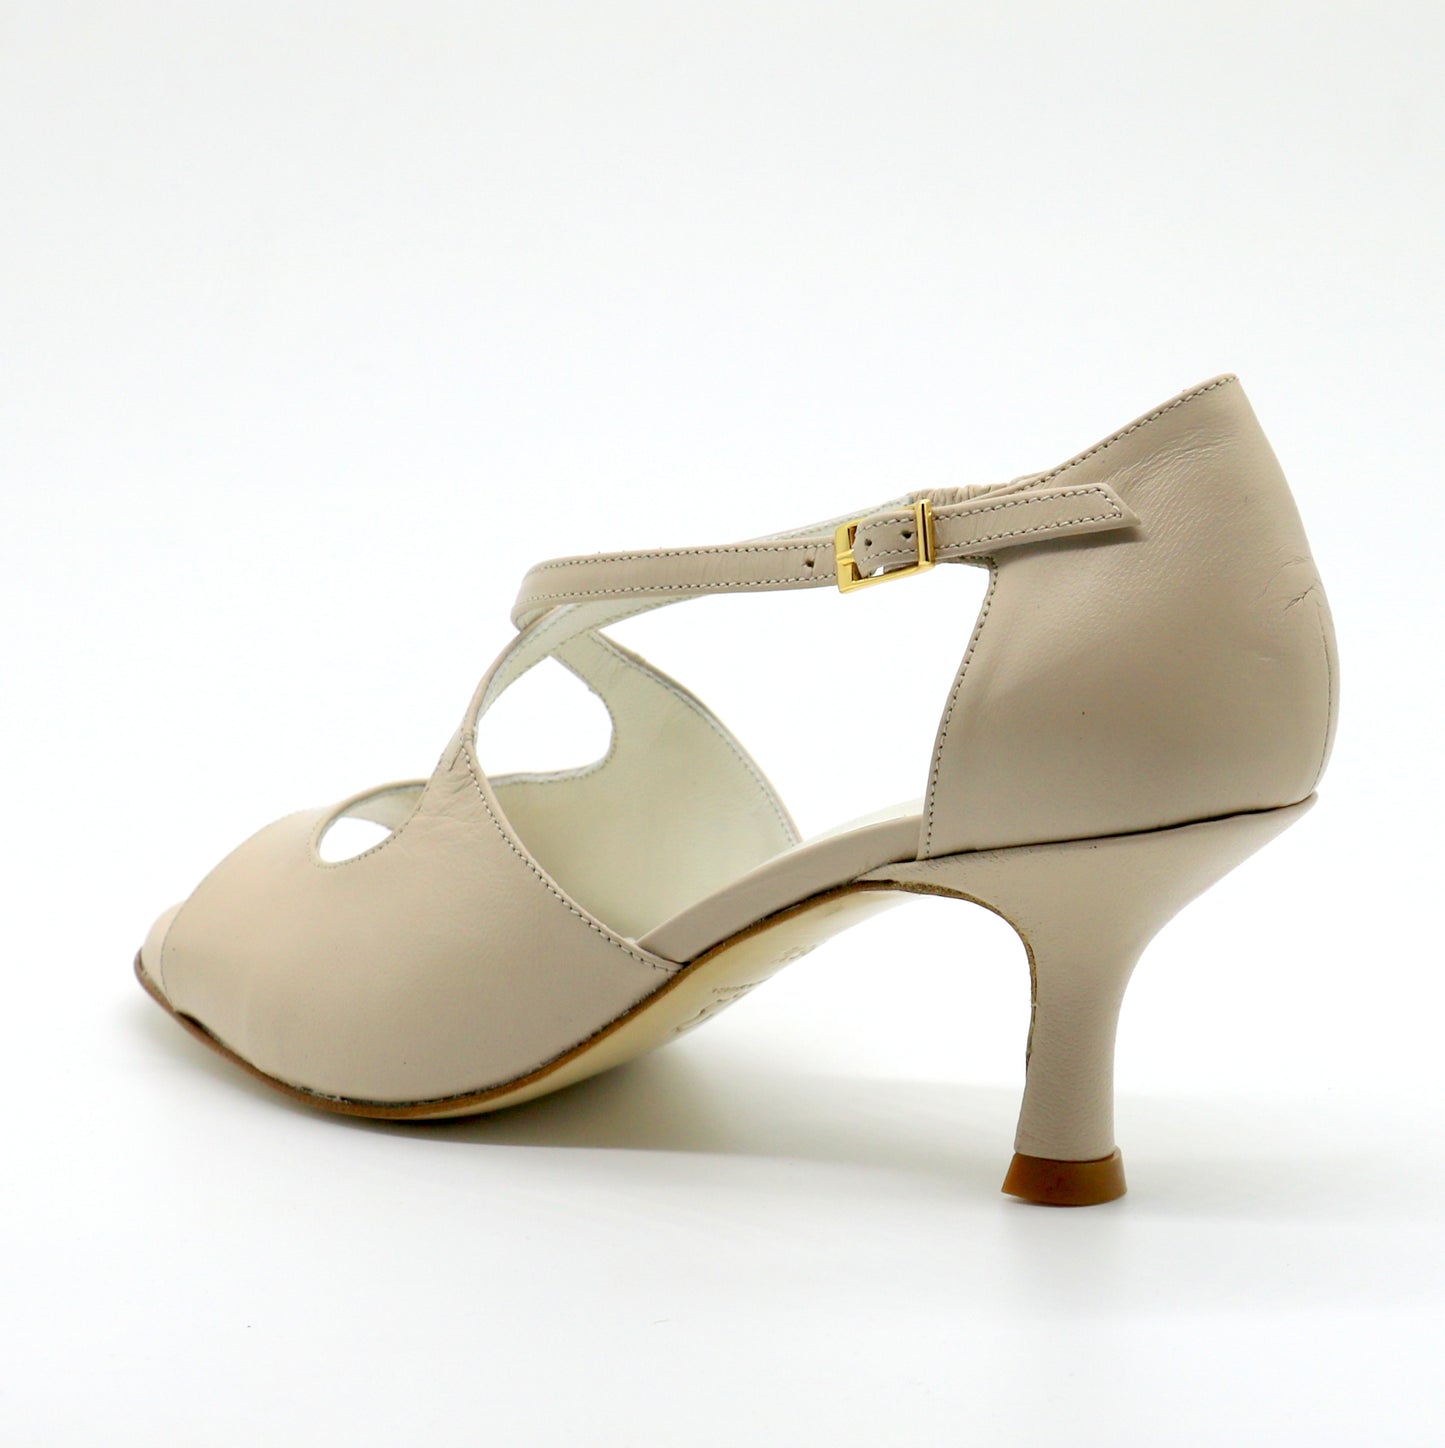 Nude crossover heels 6cm